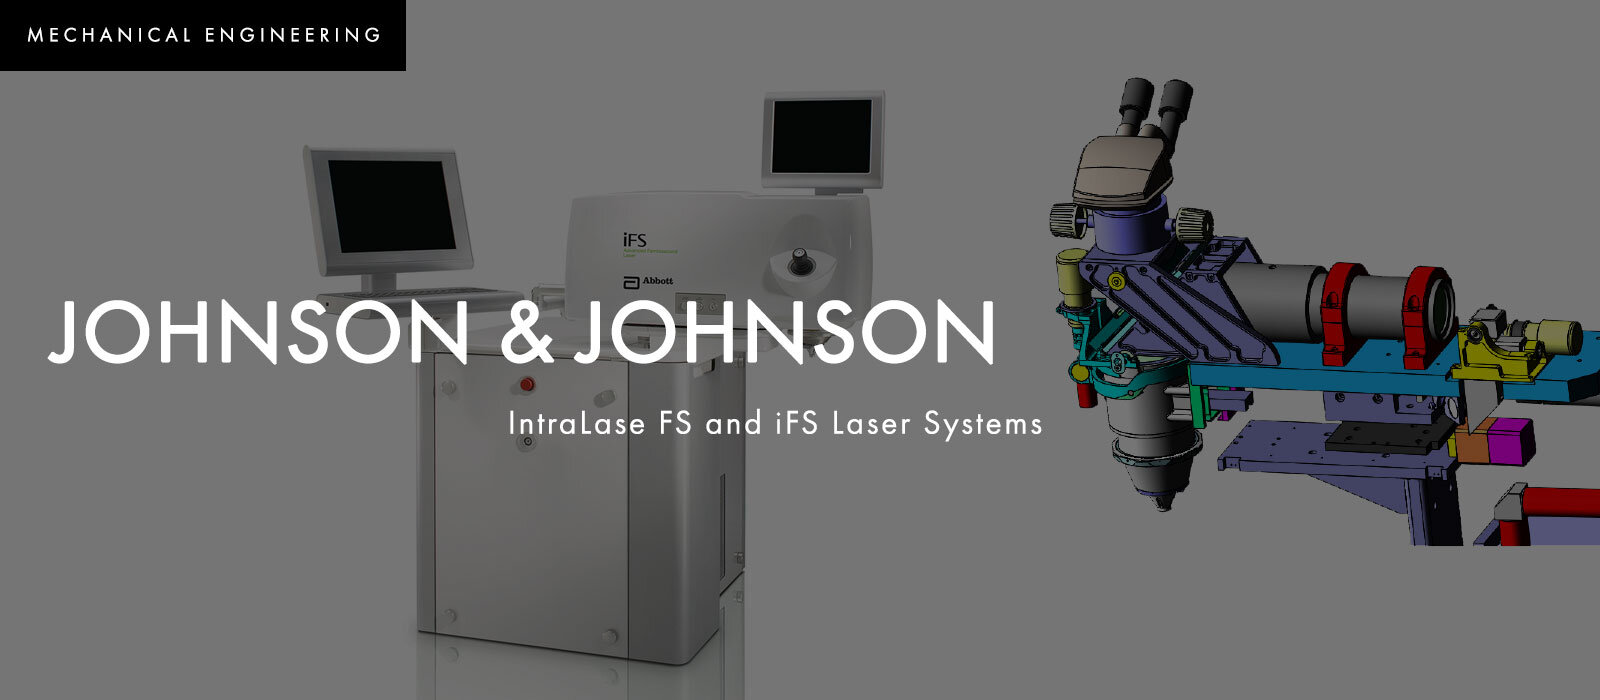 Johnson-&-Johnson-mechanical-2.jpg